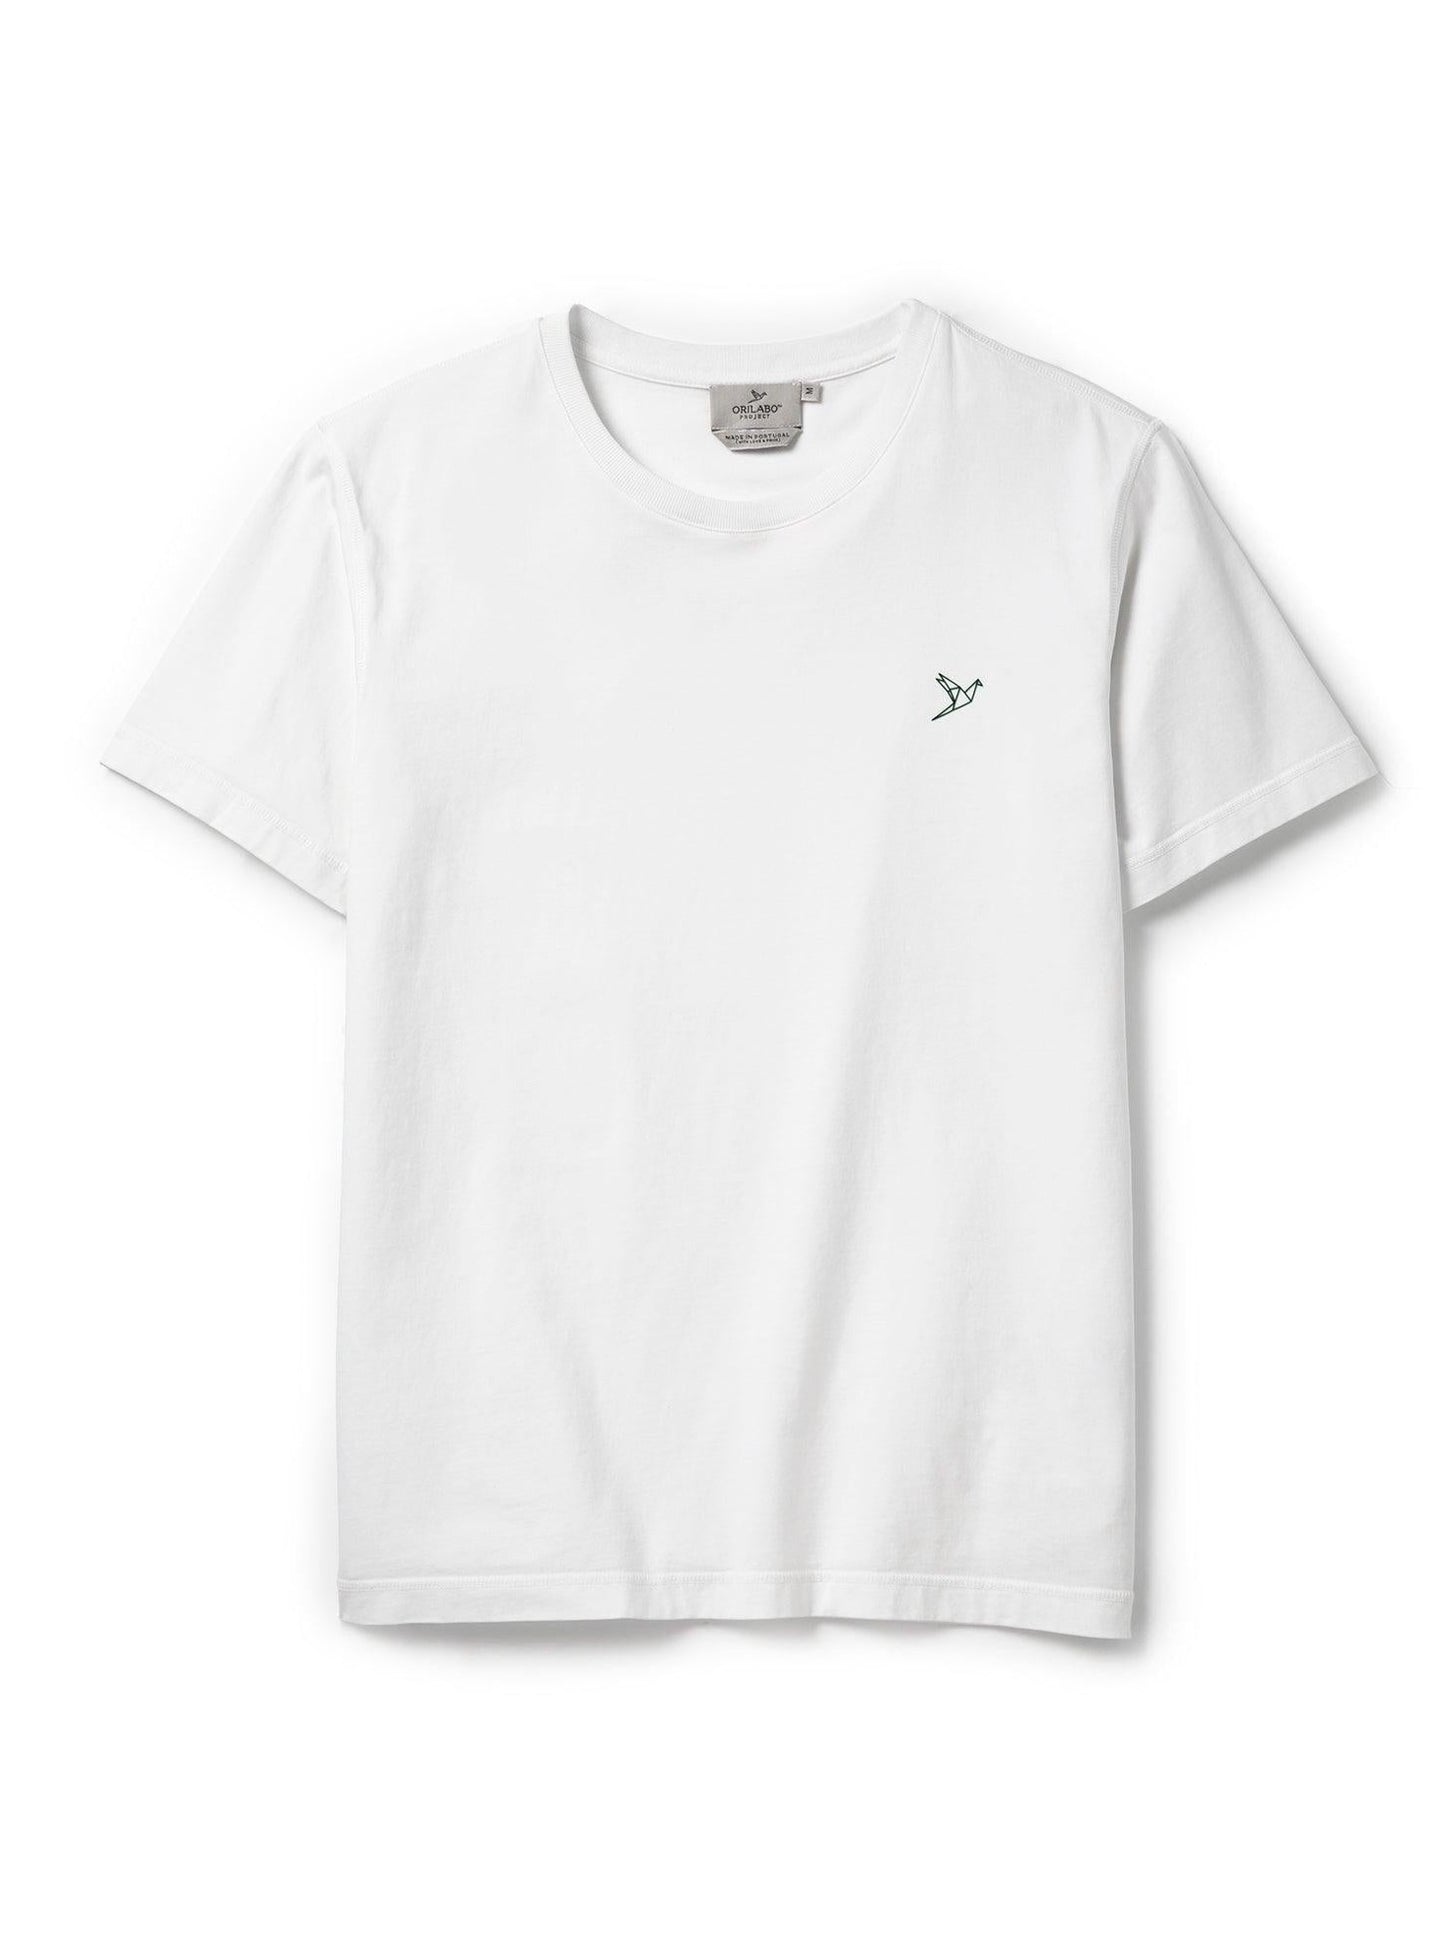 
                  
                    Men's Evolution 3D Logo T-shirt - White - ORILABO Project
                  
                